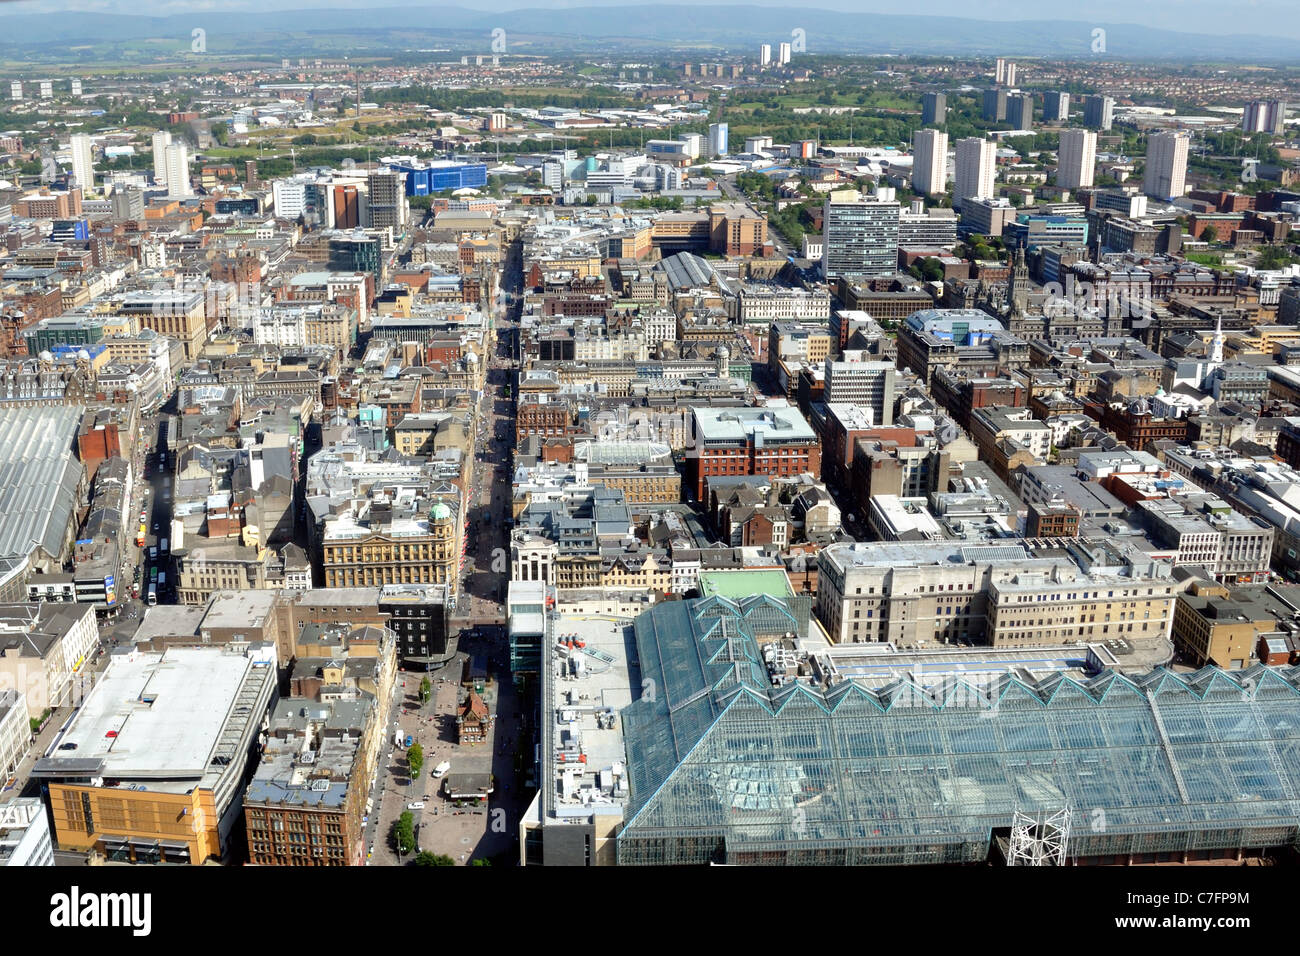 Vue sur le centre-ville de Glasgow en Écosse, au Royaume-Uni, en Europe, à partir de l'air avec la "maison de verre" (St Enoch Centre) et St Enoch Square au premier plan. Banque D'Images